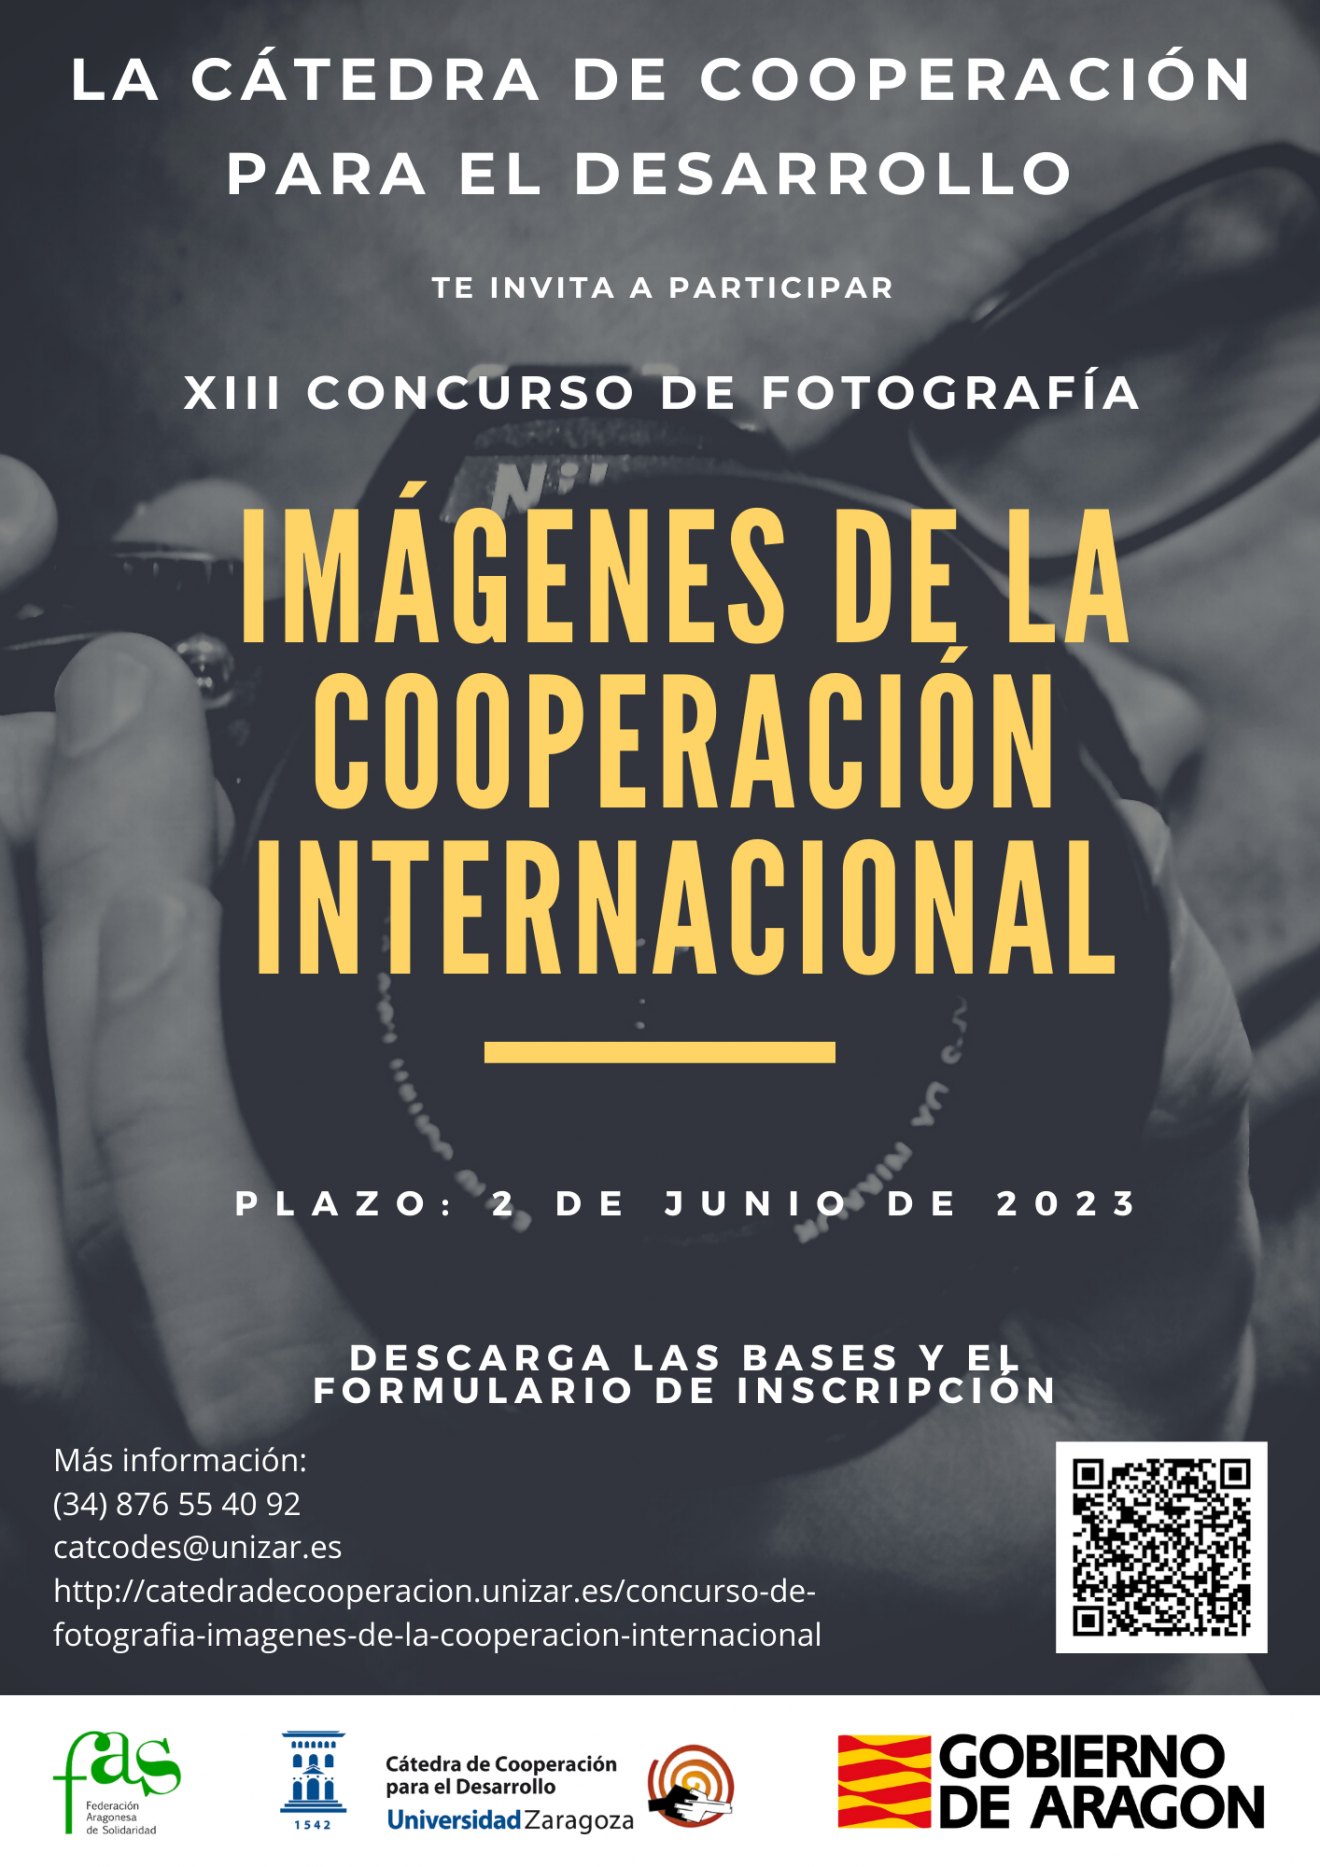 Concurso de Fotografía “Imágenes de la Cooperación Internacional”